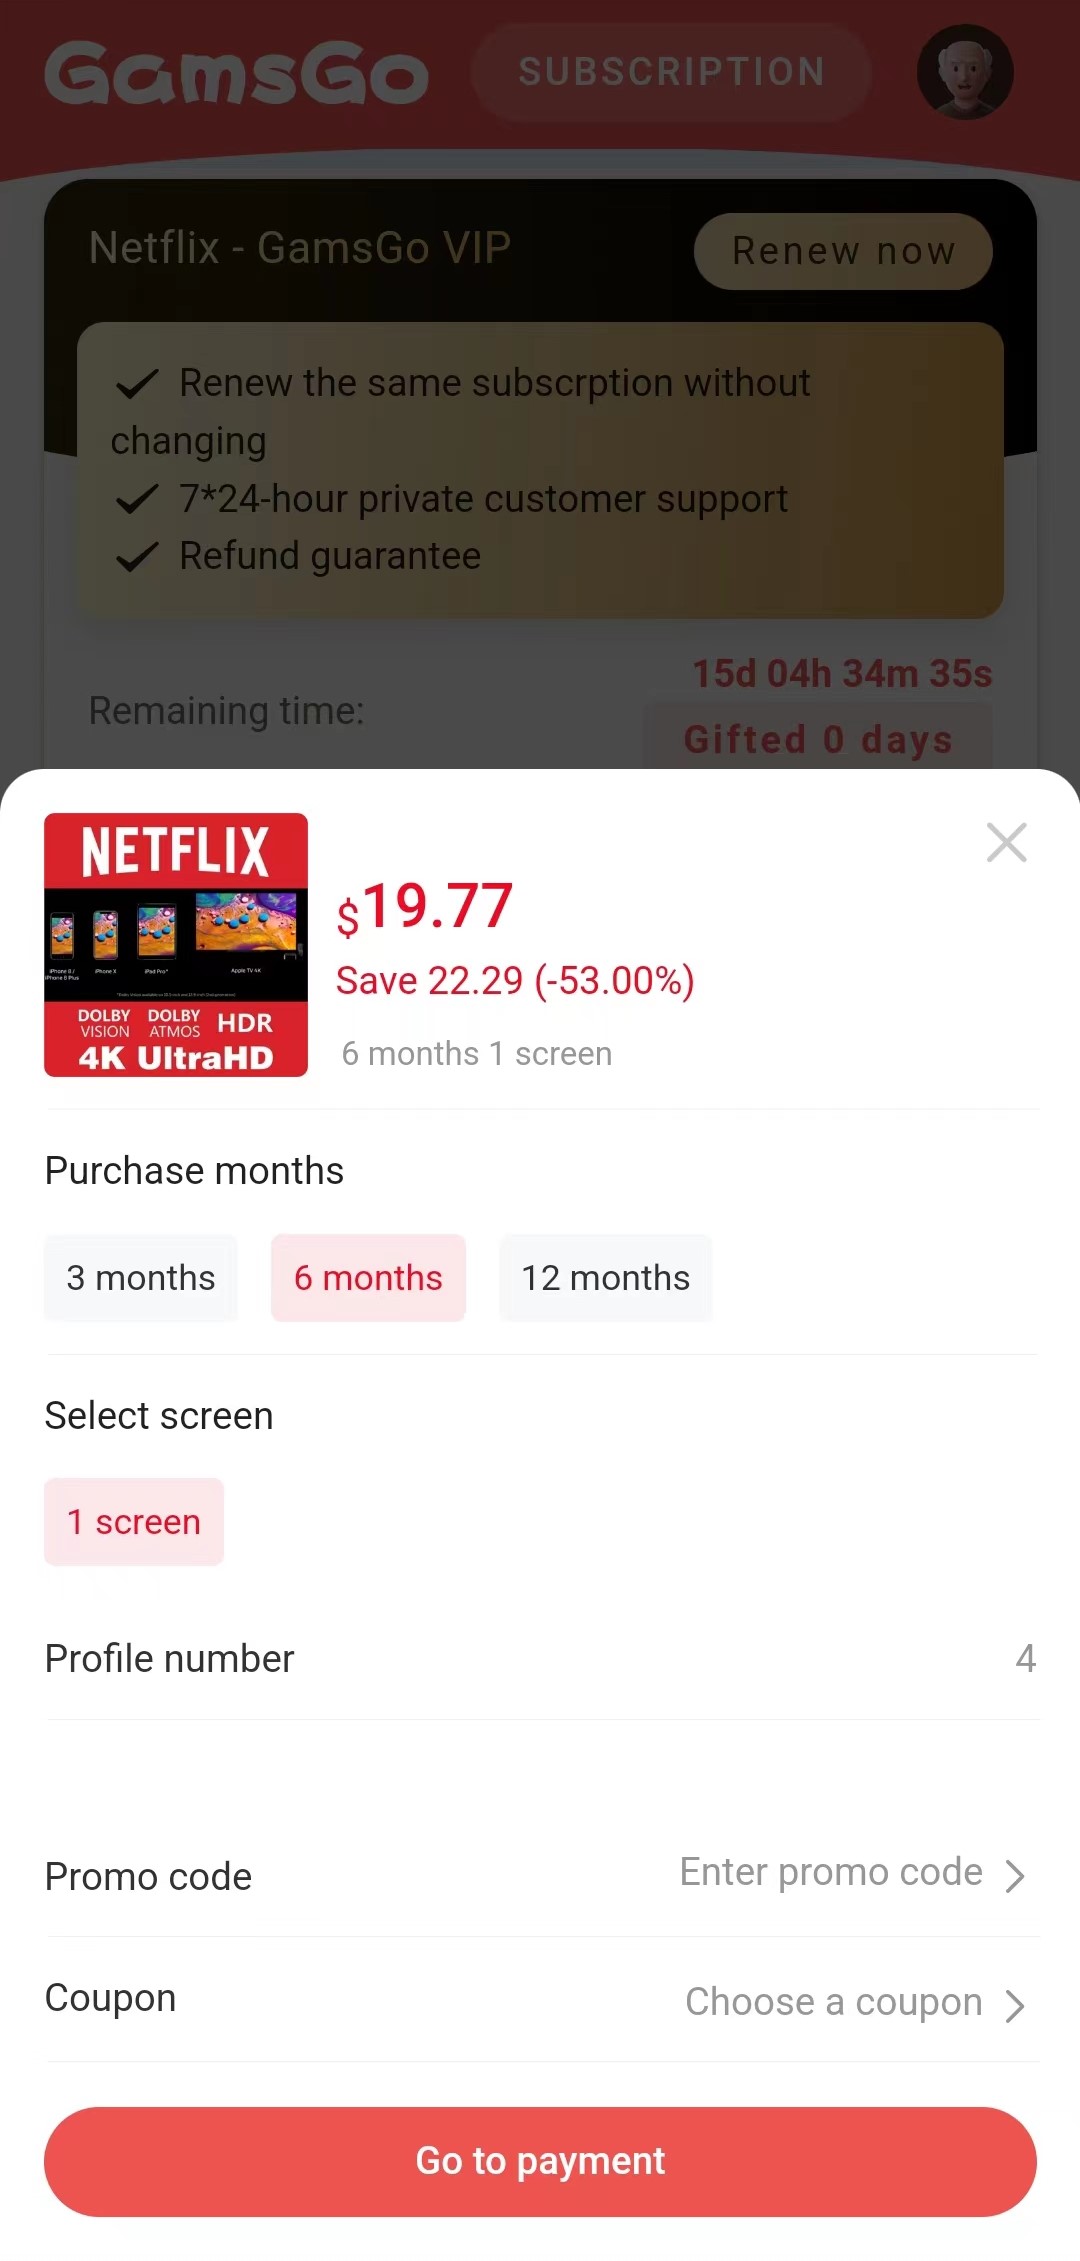 Come rinnovare l'abbonamento Netflix su GamsGo